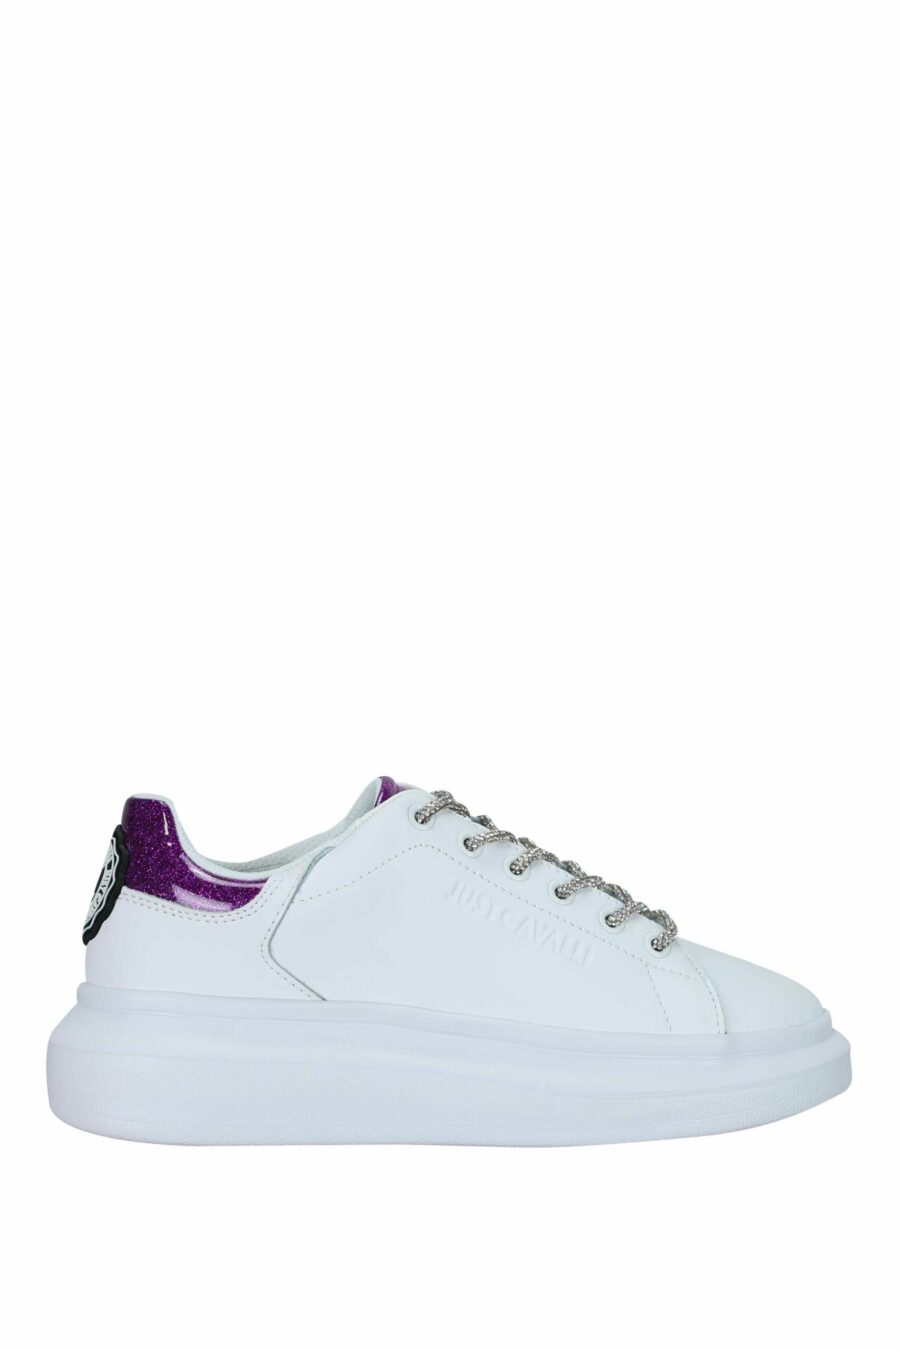 Zapatillas blancas con detalle plateado con purpurina y logo - 8052672731180 scaled